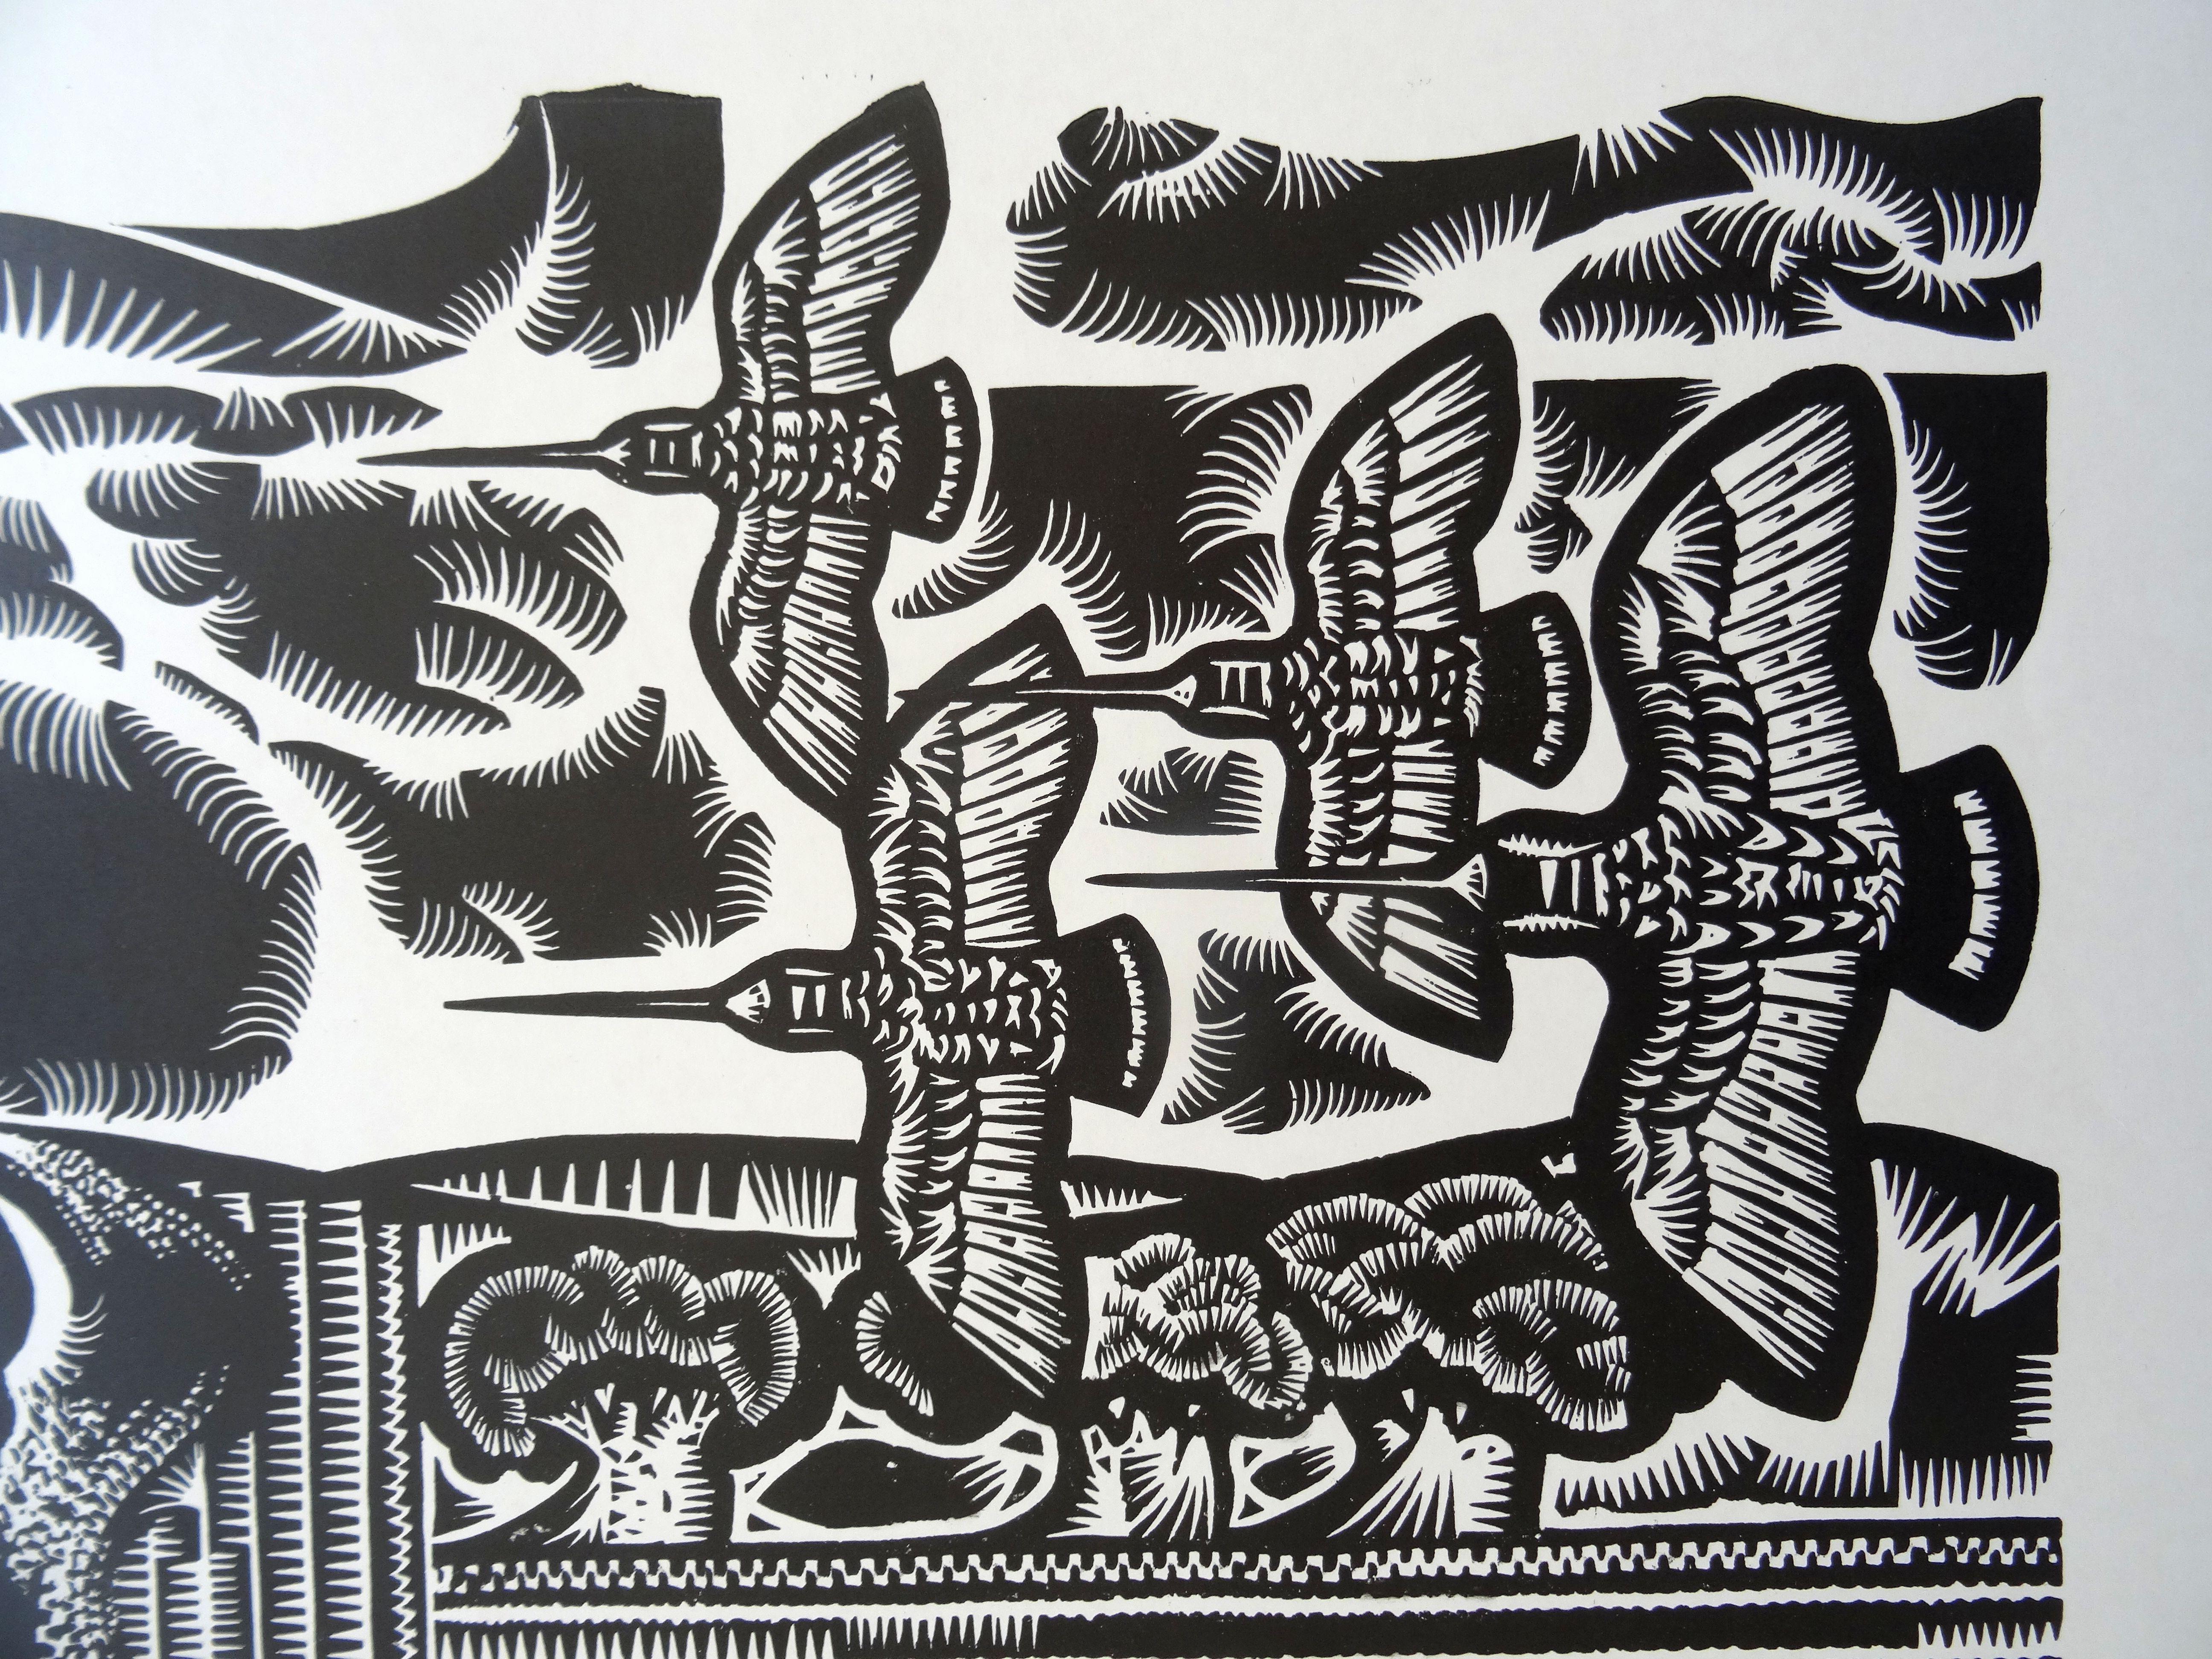 Woodcocks Rückkehr. 1970, Papier, Linolschnitt, Druckgröße 52x55 cm; insgesamt 70x65 cm – Print von Dainis Rozkalns